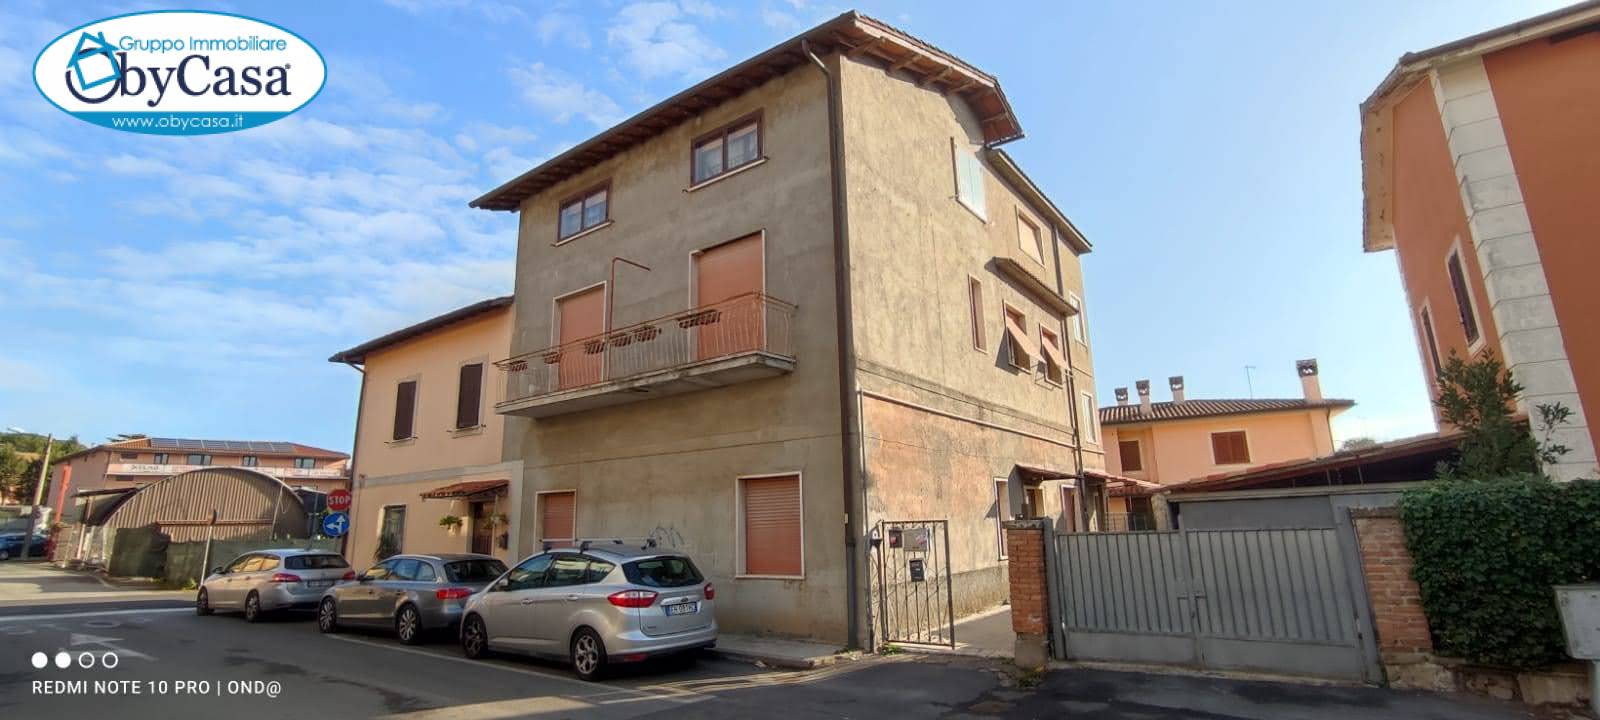 Appartamento in vendita a Manziana, 4 locali, zona Località: centro1, prezzo € 150.000 | CambioCasa.it